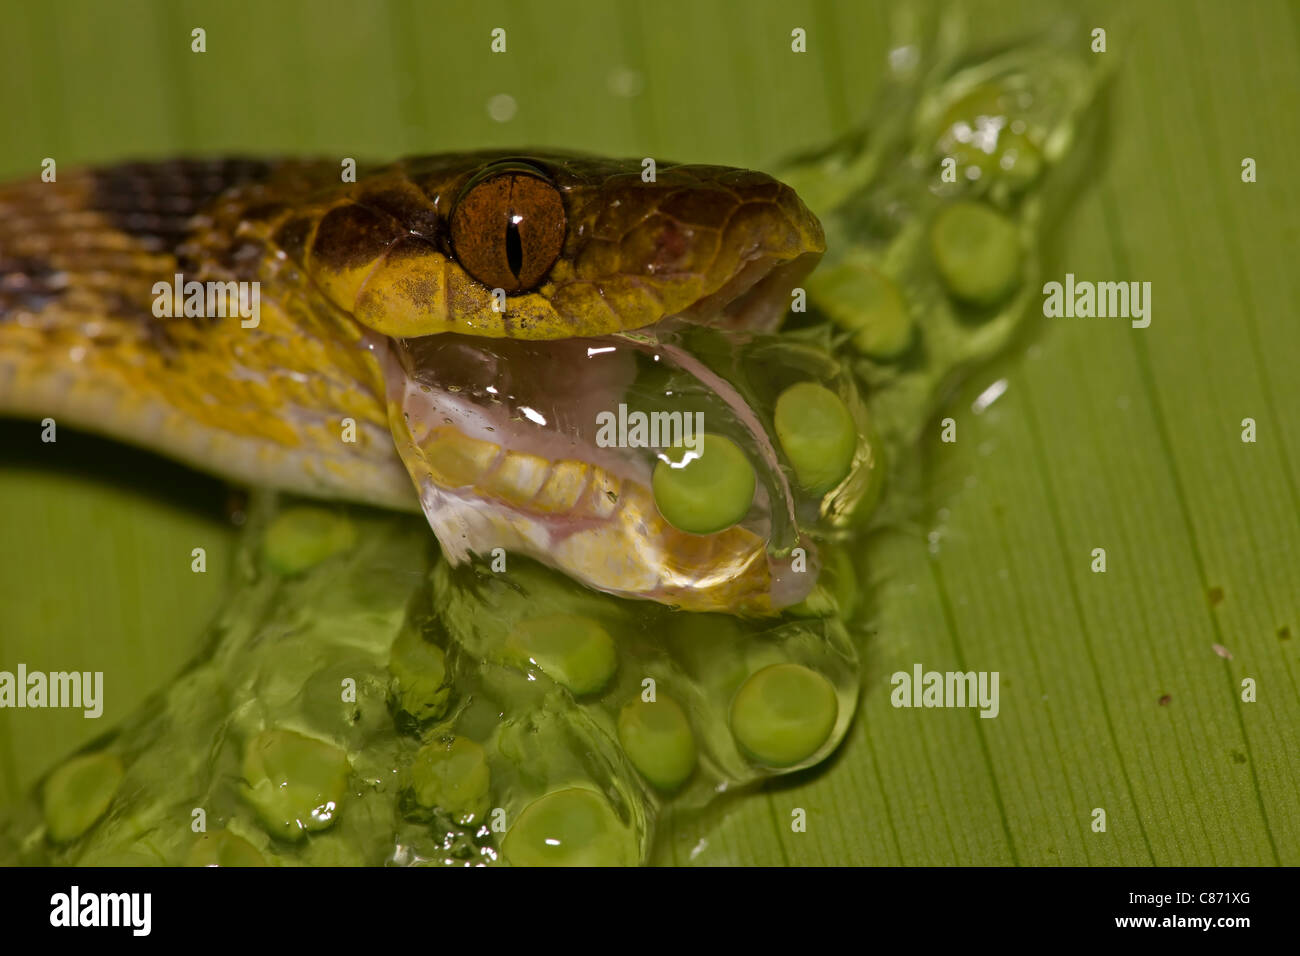 Nördlichen Cat-eyed Snake - (Leptodeira Septentrionalis) - essen Frosch Eiern - Costa Rica - tropischer Regenwald Stockfoto